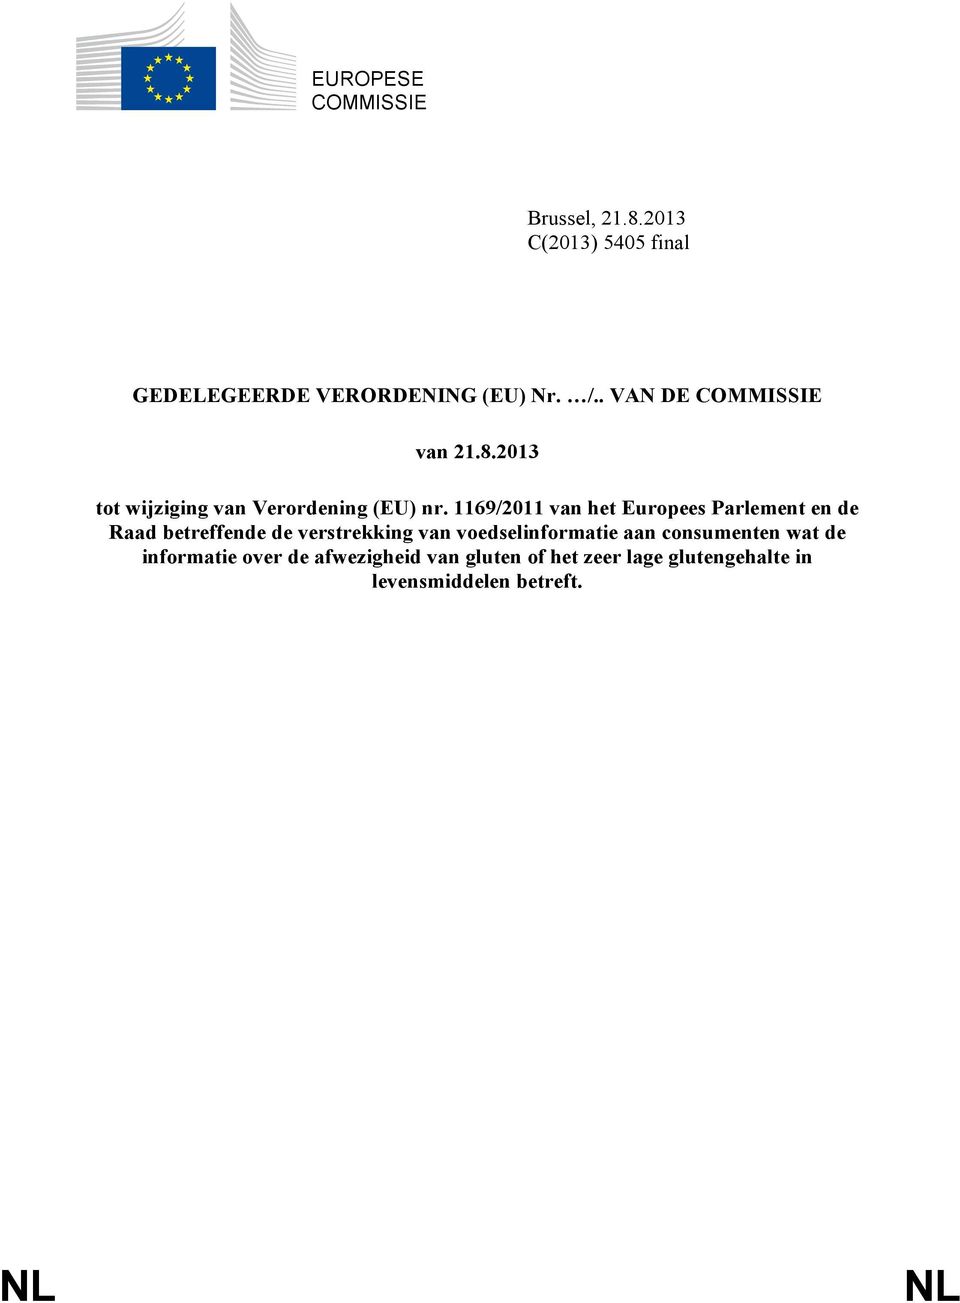 1169/2011 van het Europees Parlement en de Raad betreffende de verstrekking van voedselinformatie